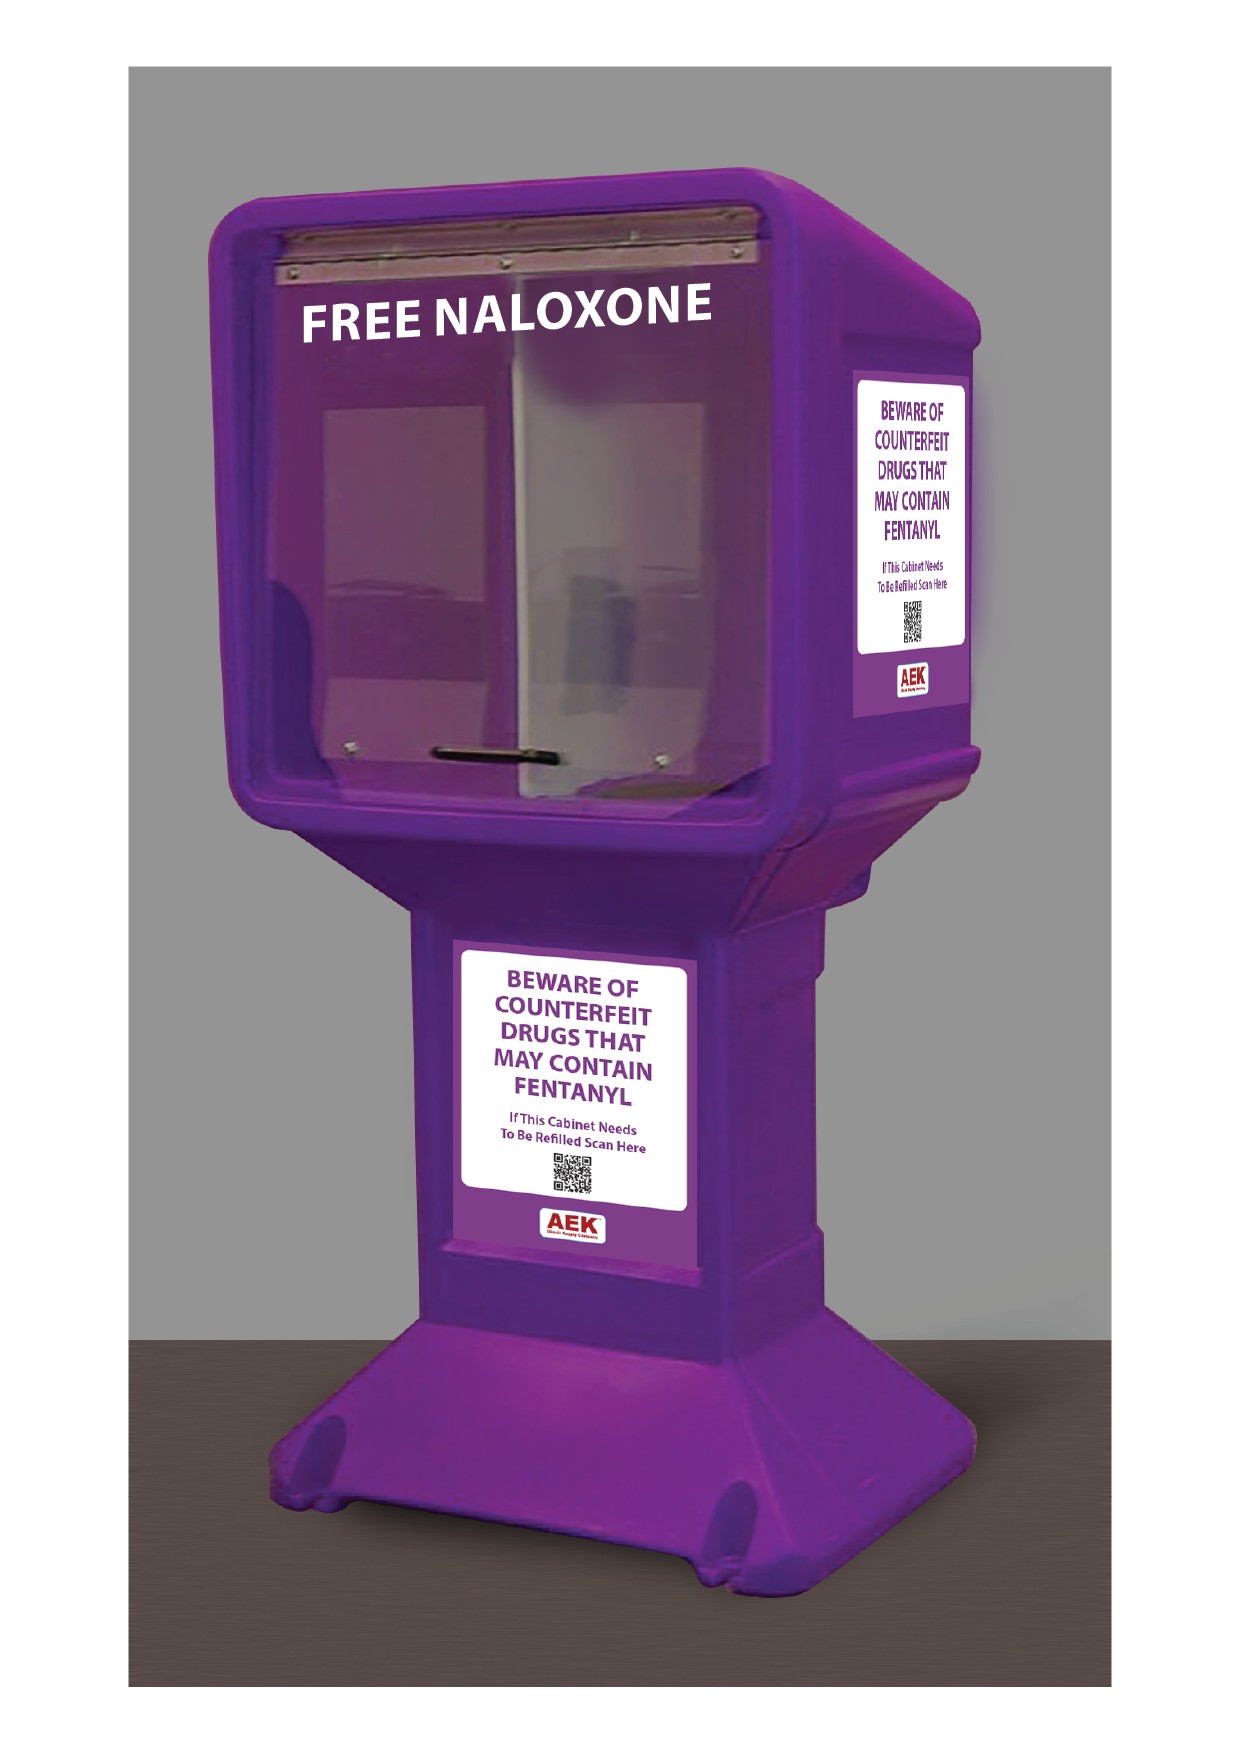 Newspaper Stand Style Free Standing Naloxone Distribution Box